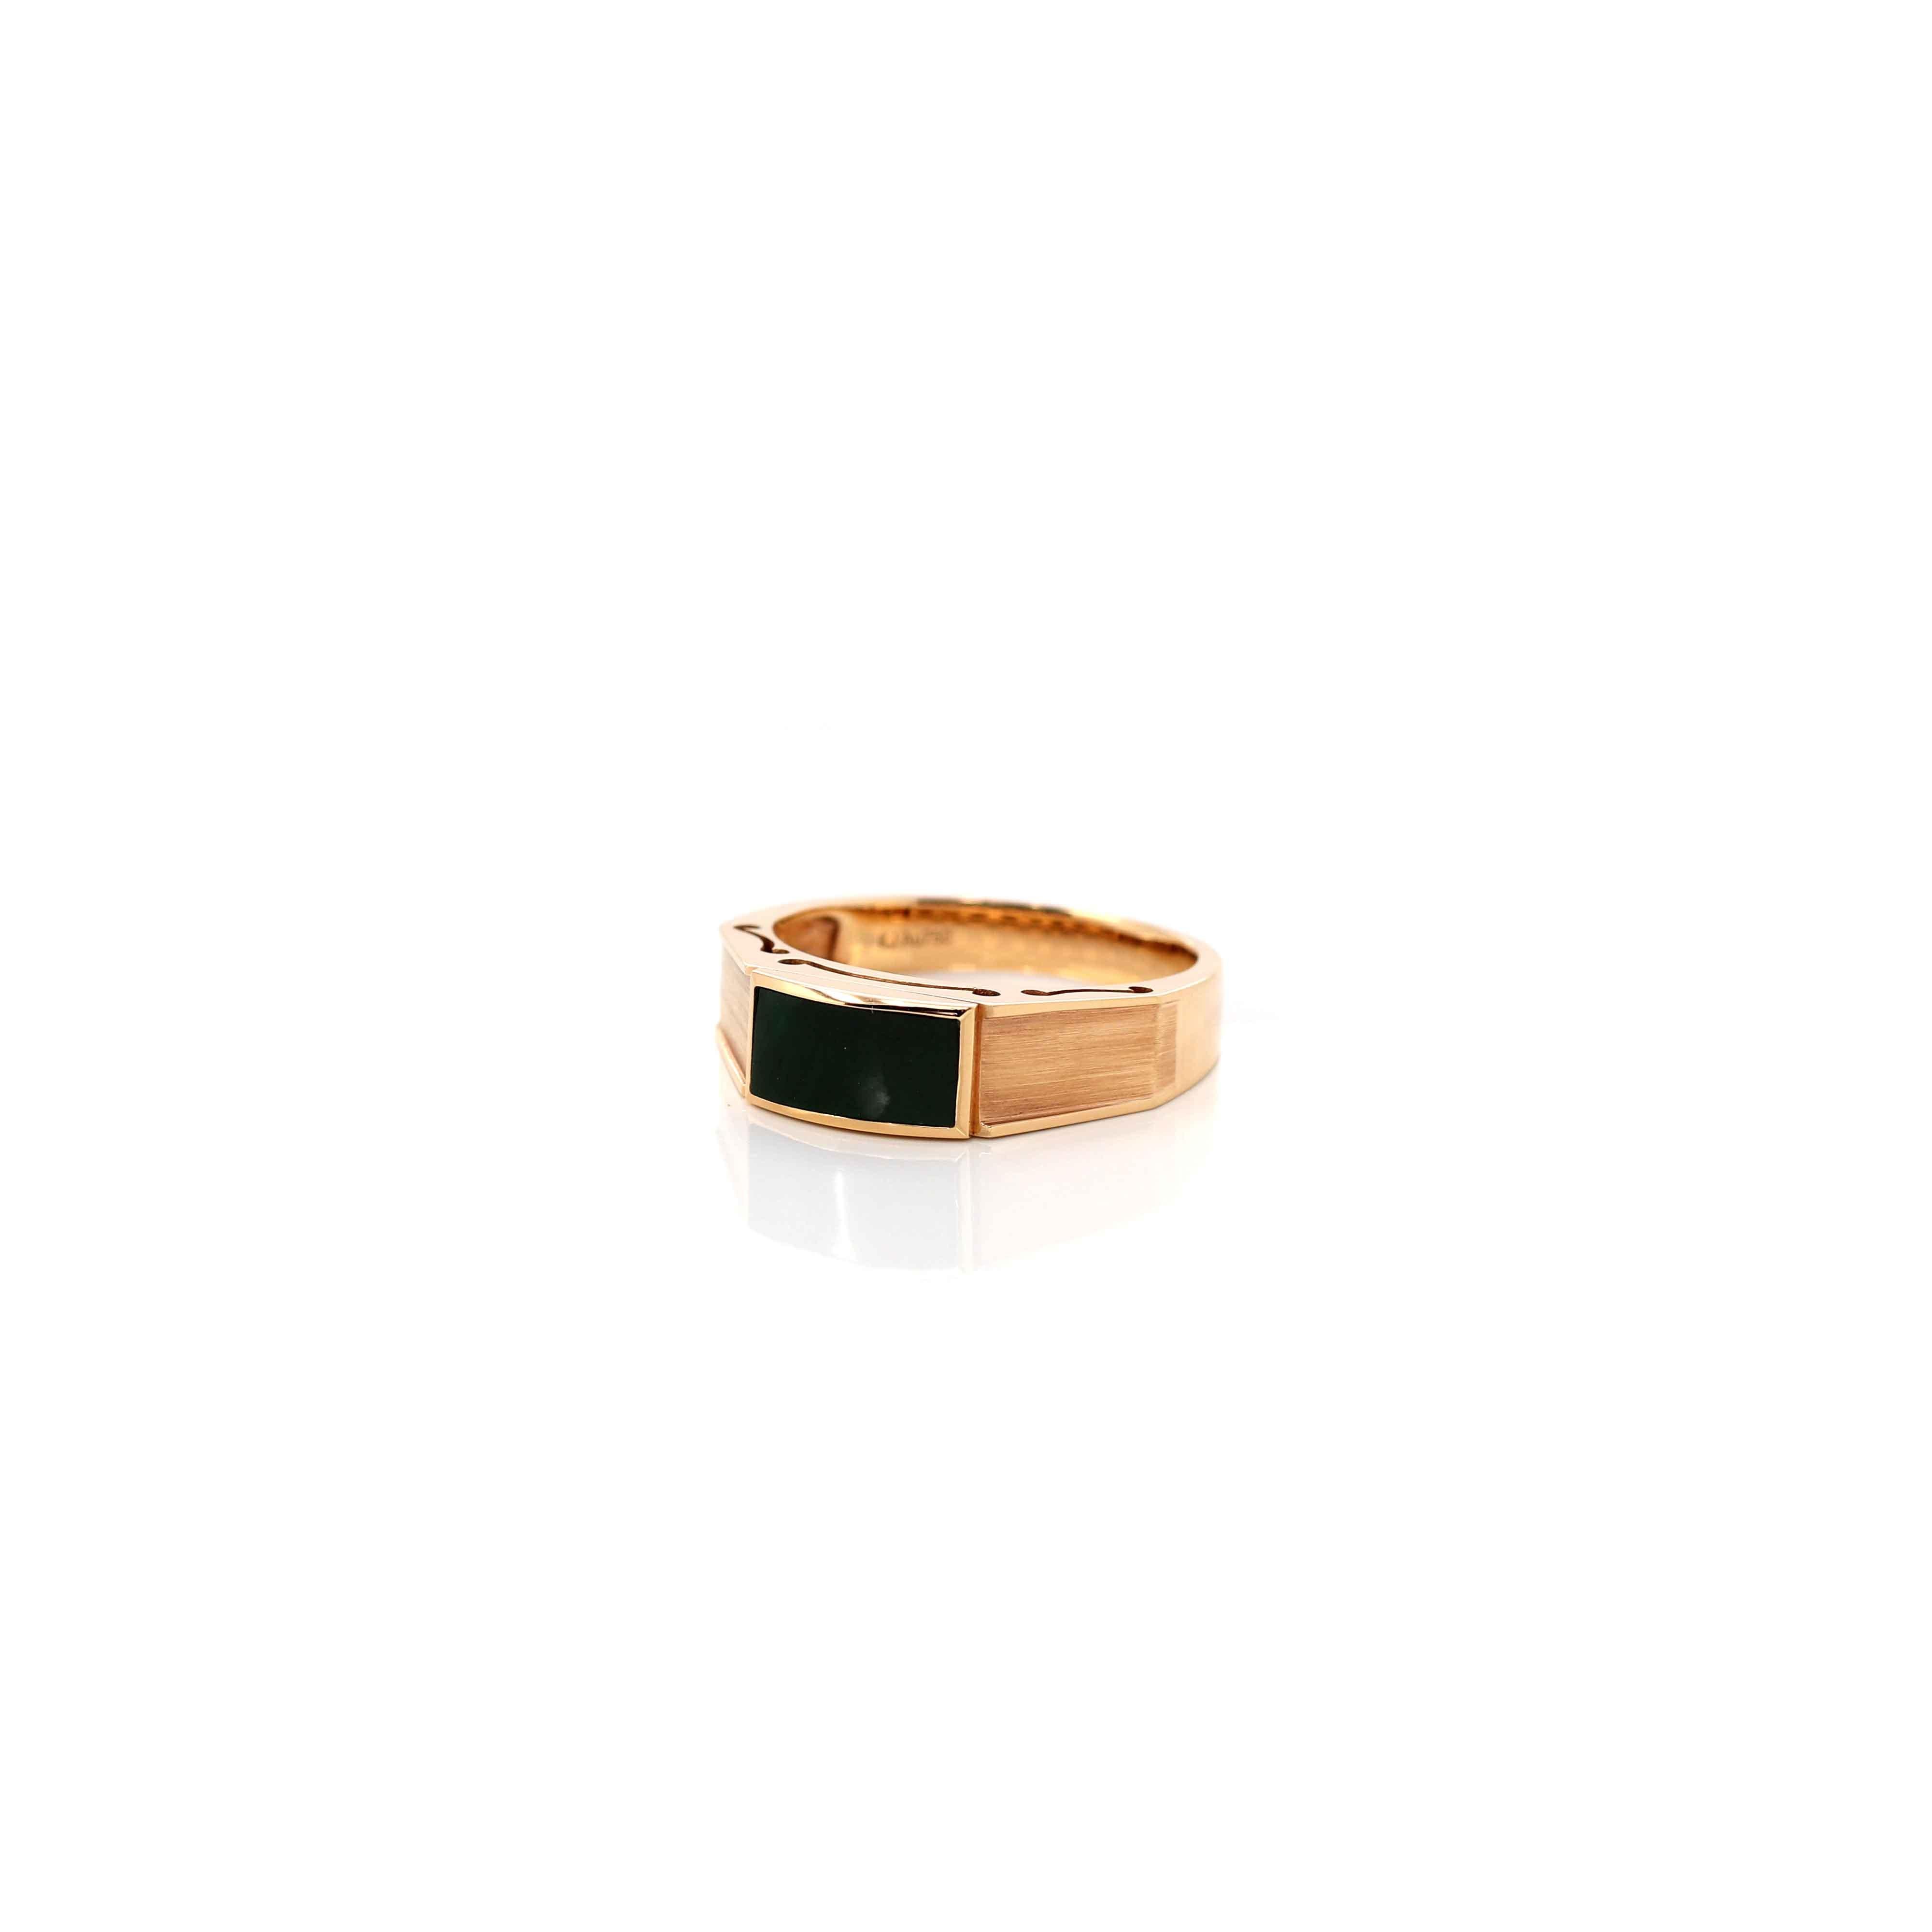 * Designkonzept---  Dieser Ring ist aus hochwertiger, echter burmesischer, tiefgrüner Jadeit-Jade gefertigt. Der grüne Jadeit zeigt tatsächlich die grüne Farbe unter dem Licht und ist durchscheinend, wie auf dem Bild gezeigt. Sehr einzigartige